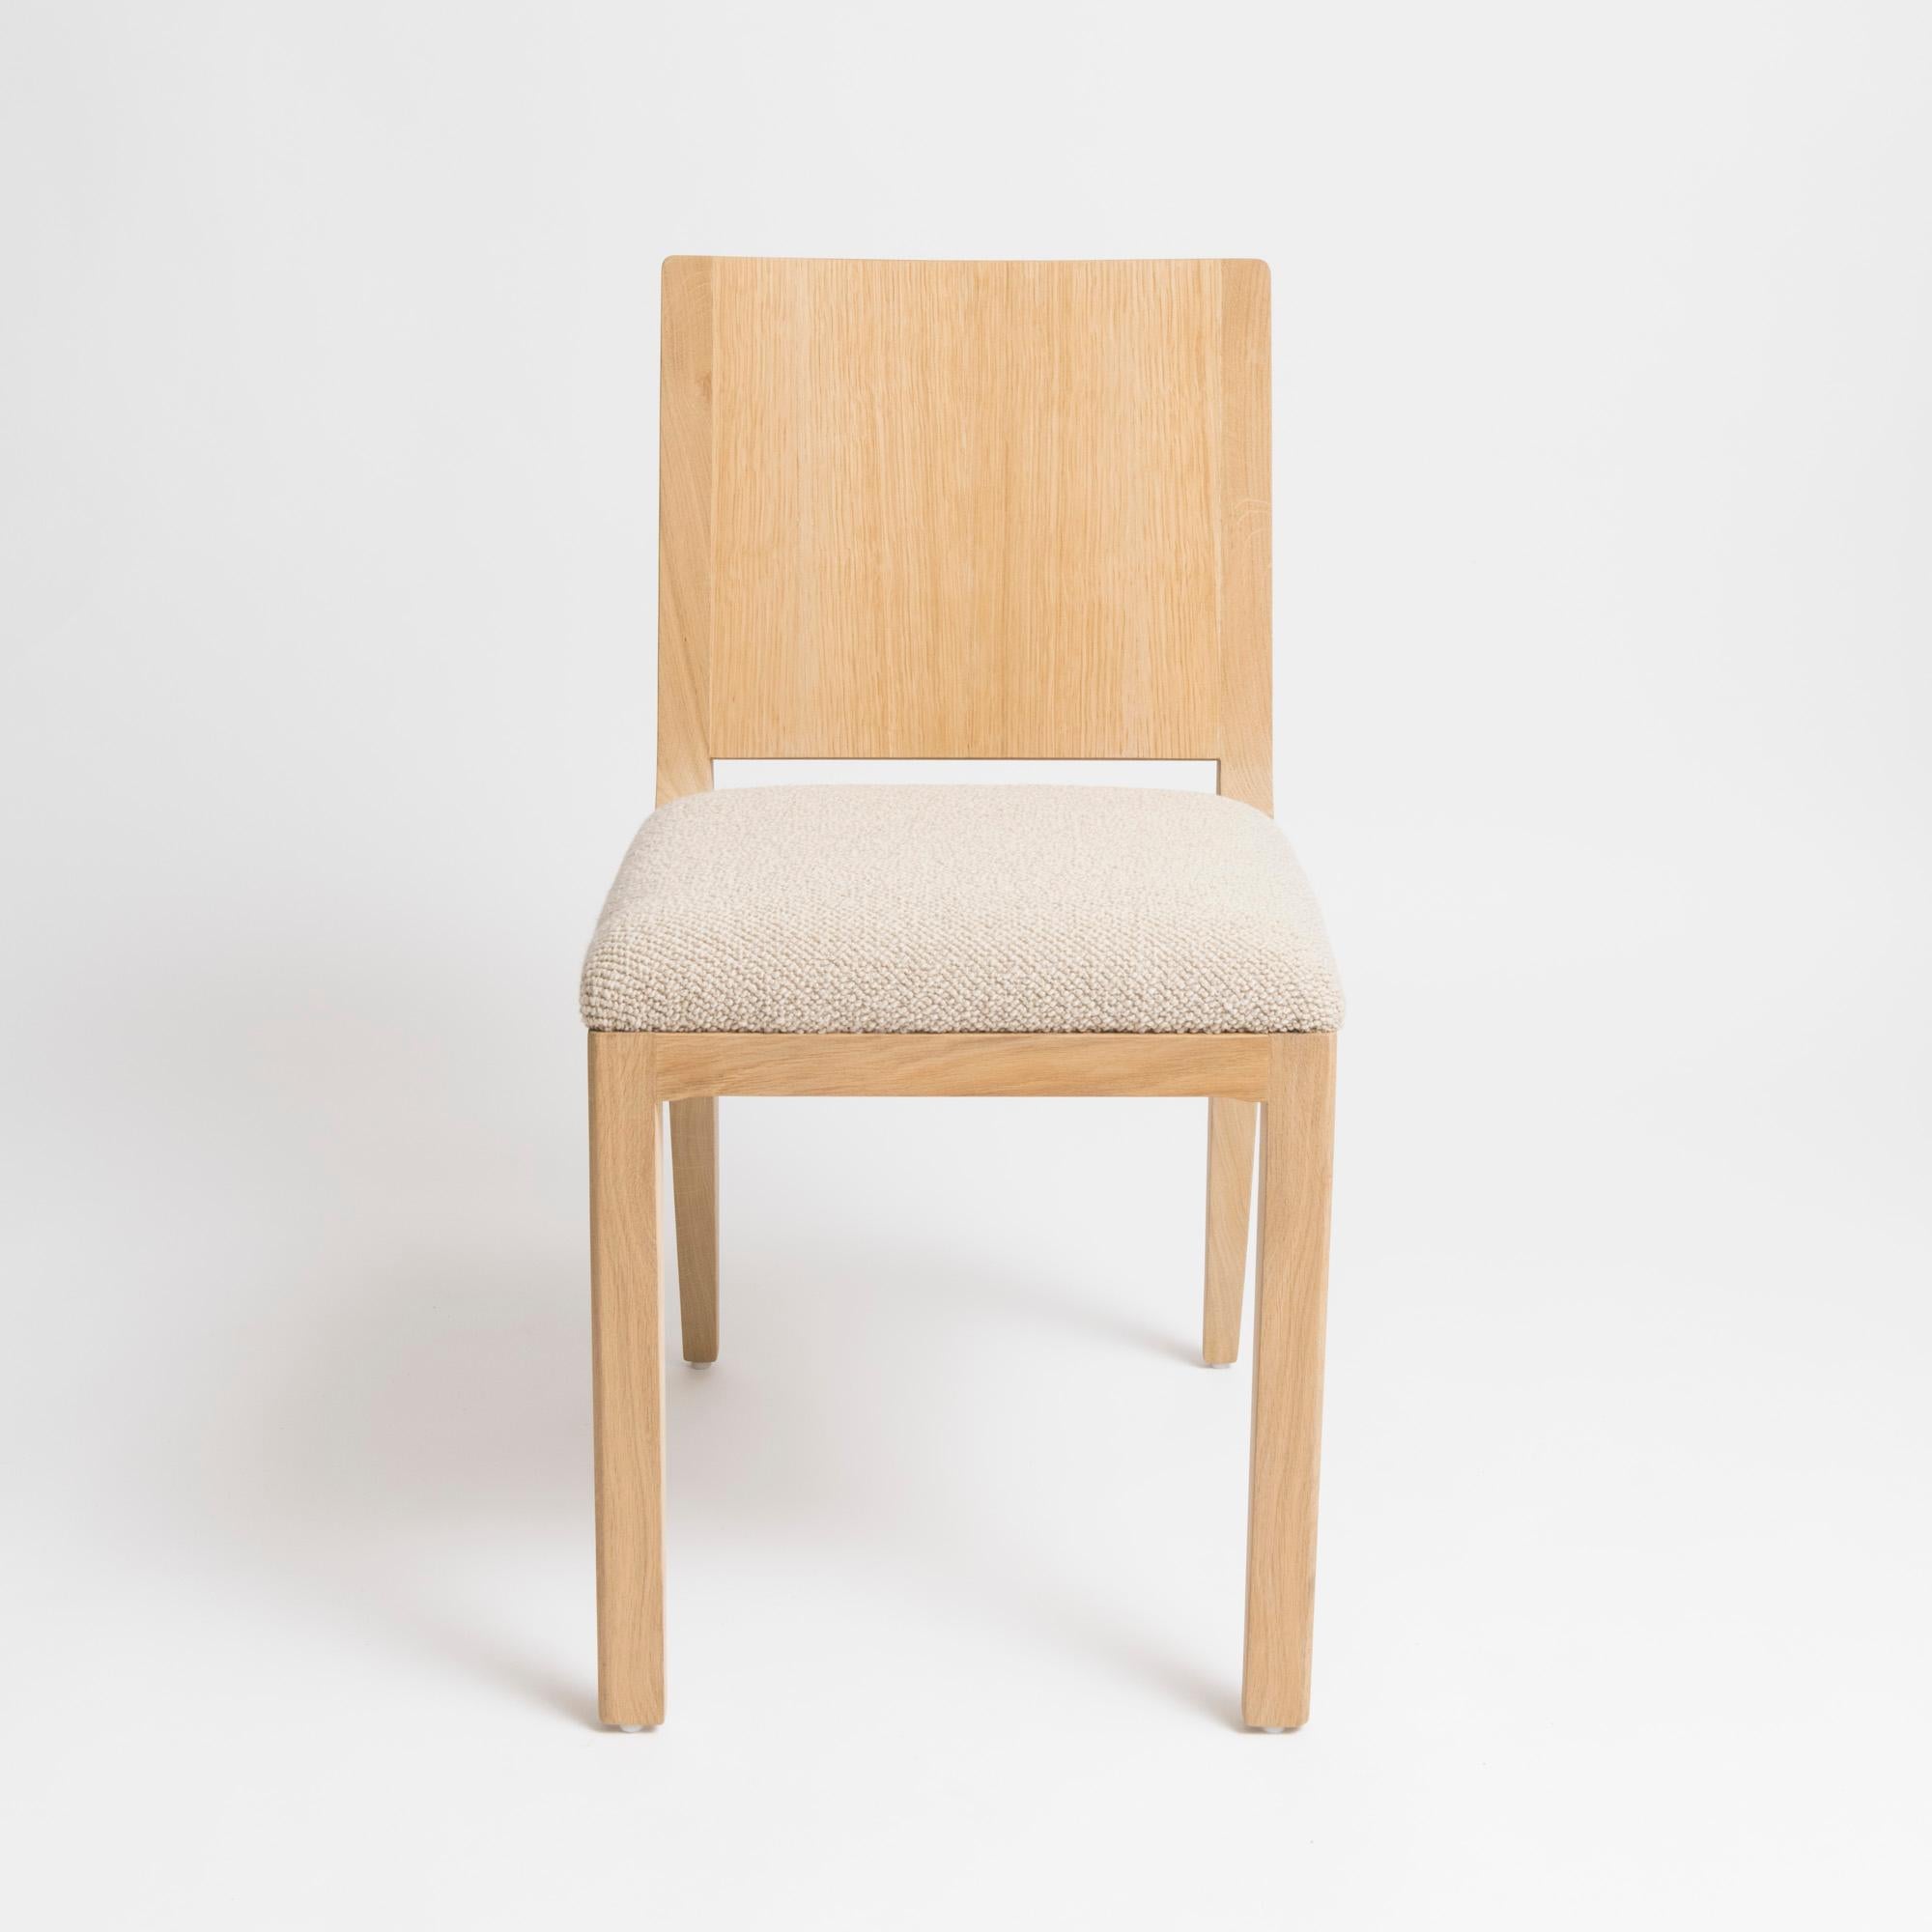 Chaise au design moderne et minimaliste du studio parisien mjiila. L'om5.1 est une chaise haut de gamme rembourrée et contemporaine, fabriquée à la main par un ébéniste qualifié. Disponible en chêne français naturel, tapissé d'un tissu 